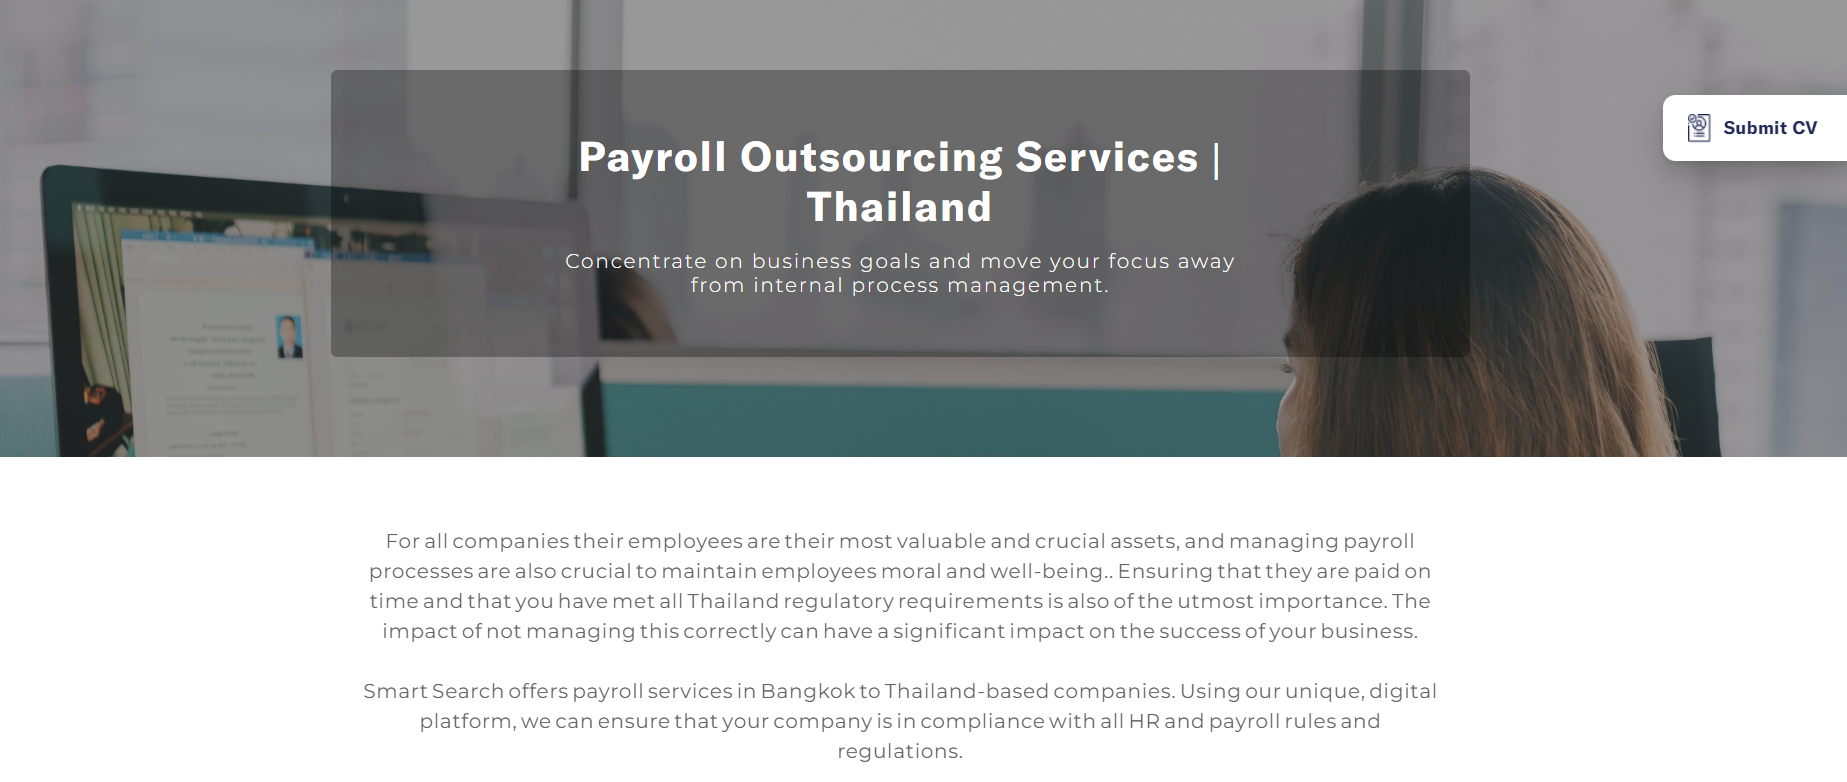 การเงินองค์กร-พนักงานมีปัญหา บริการ Payroll Solution ช่วยคุณได้